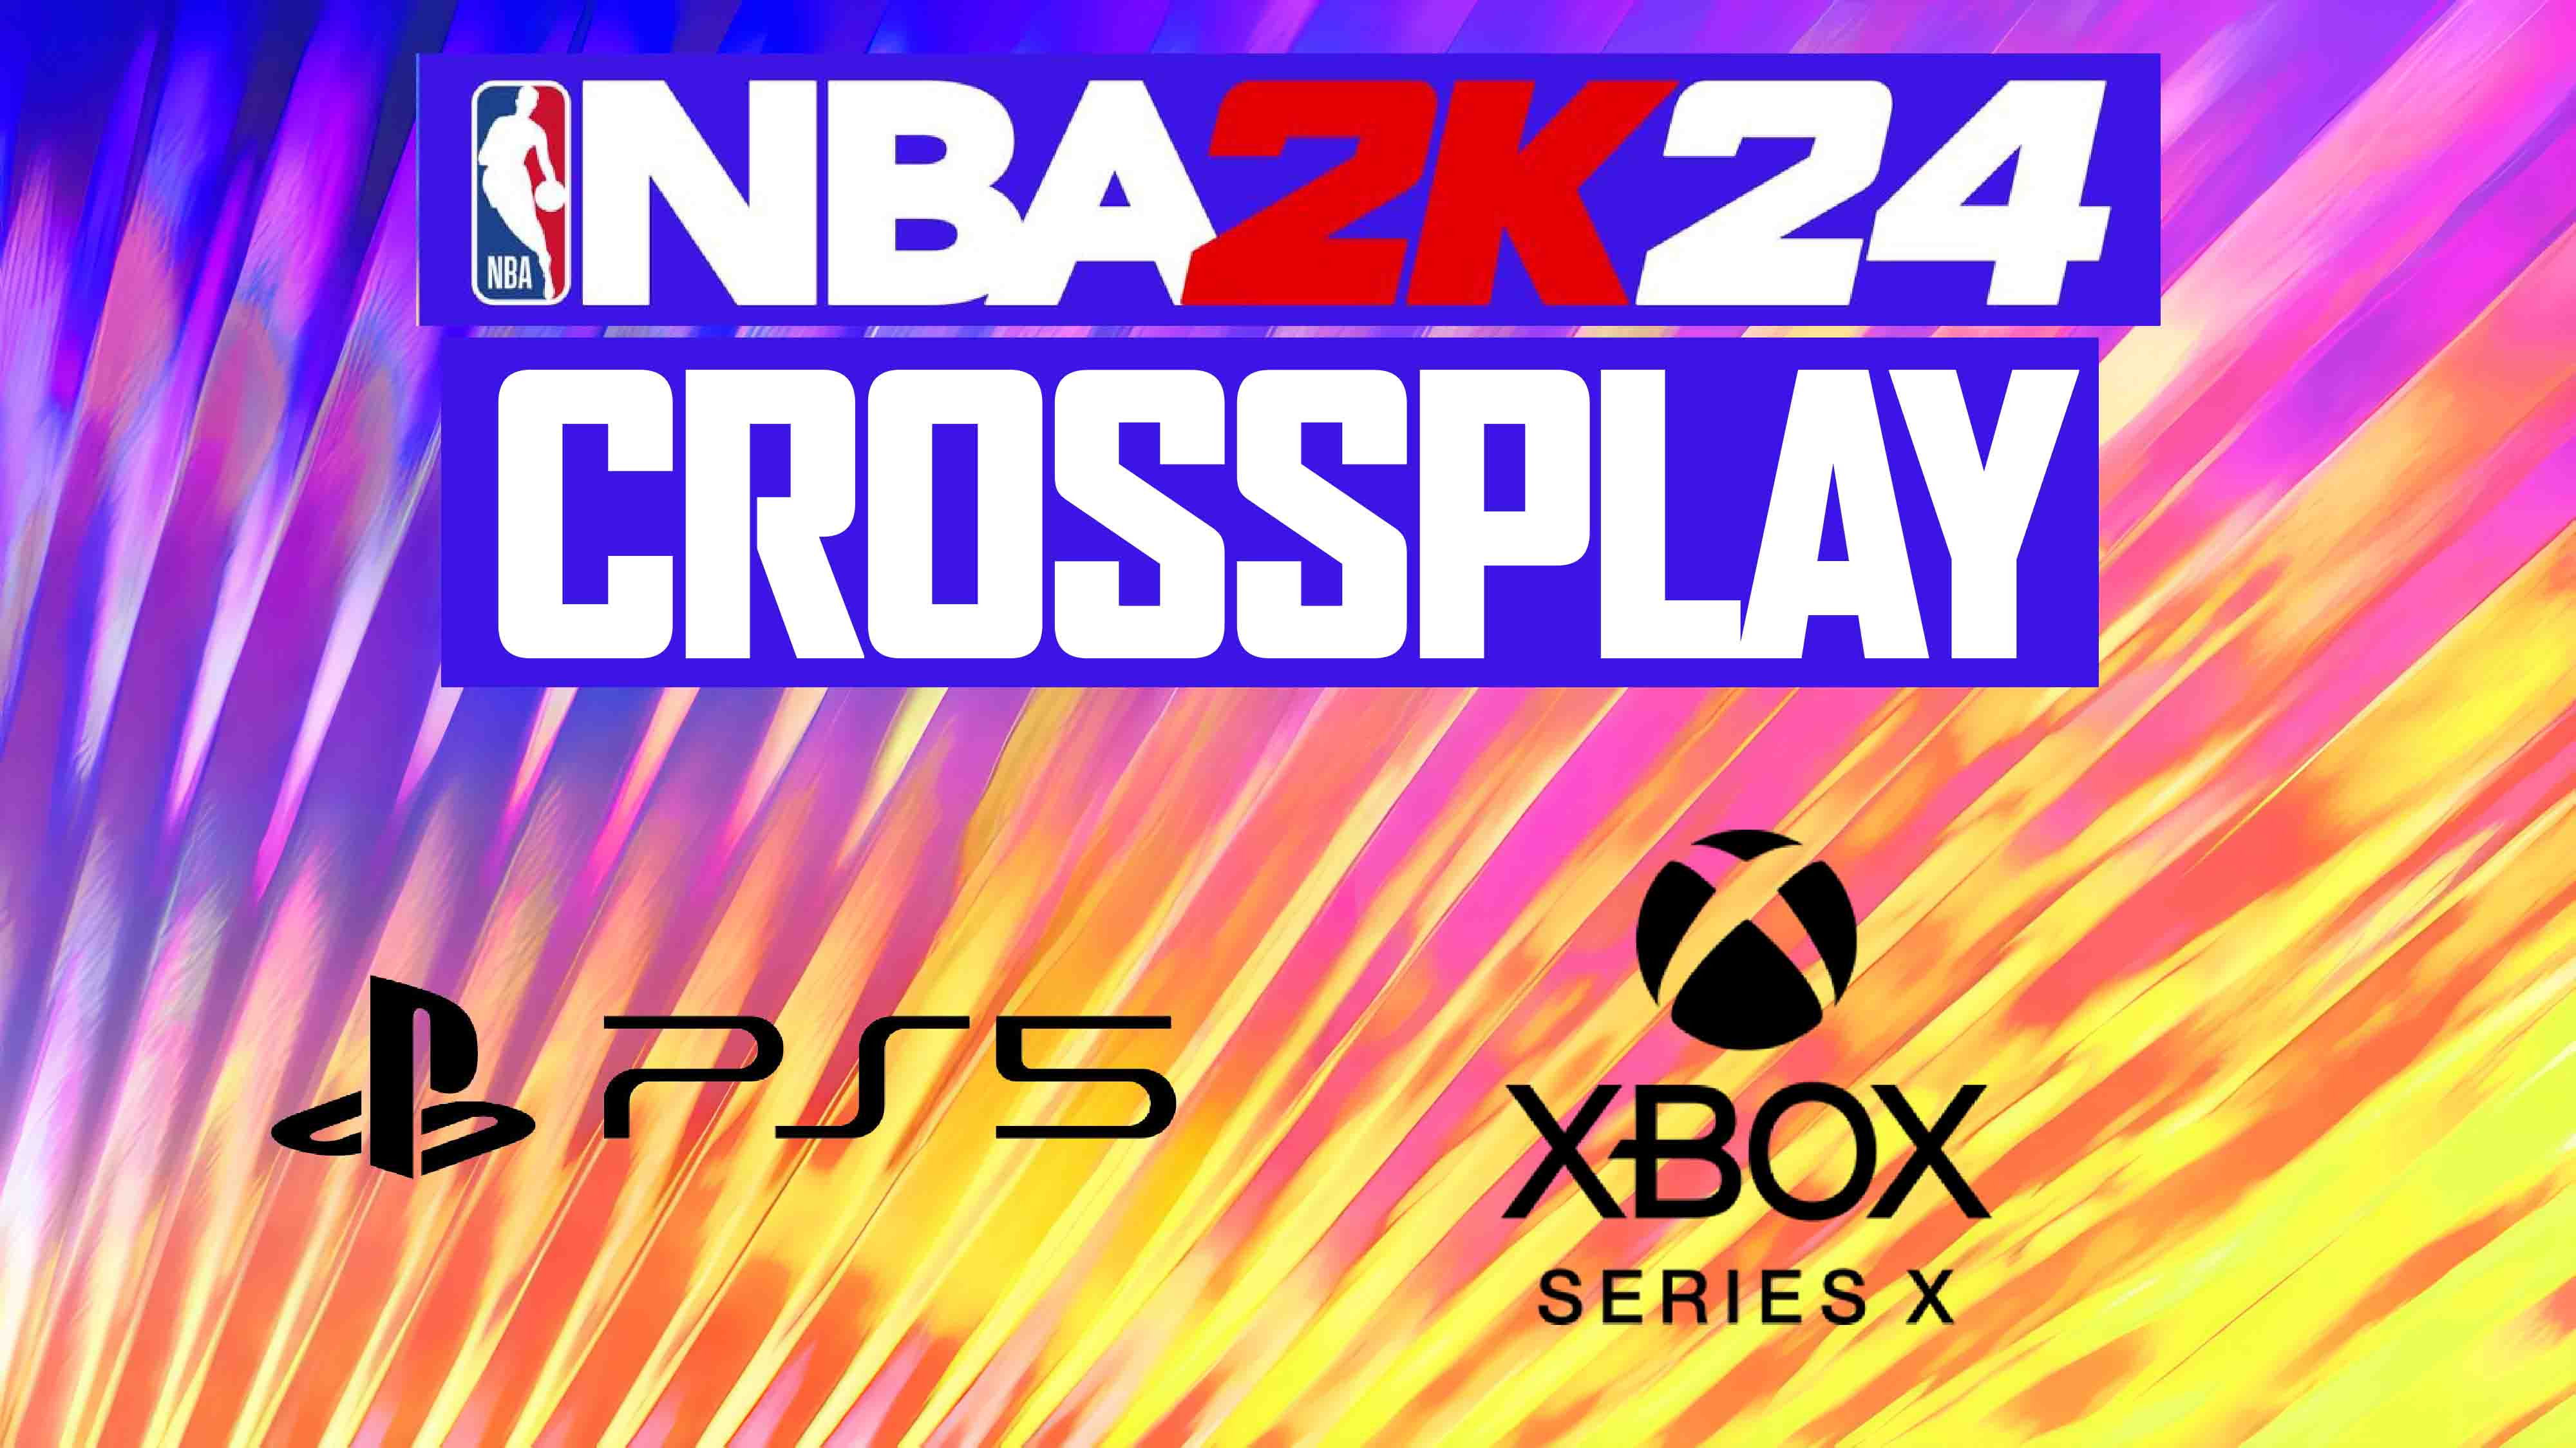 CROSSPLAY IS HERE  NBA 2K24 